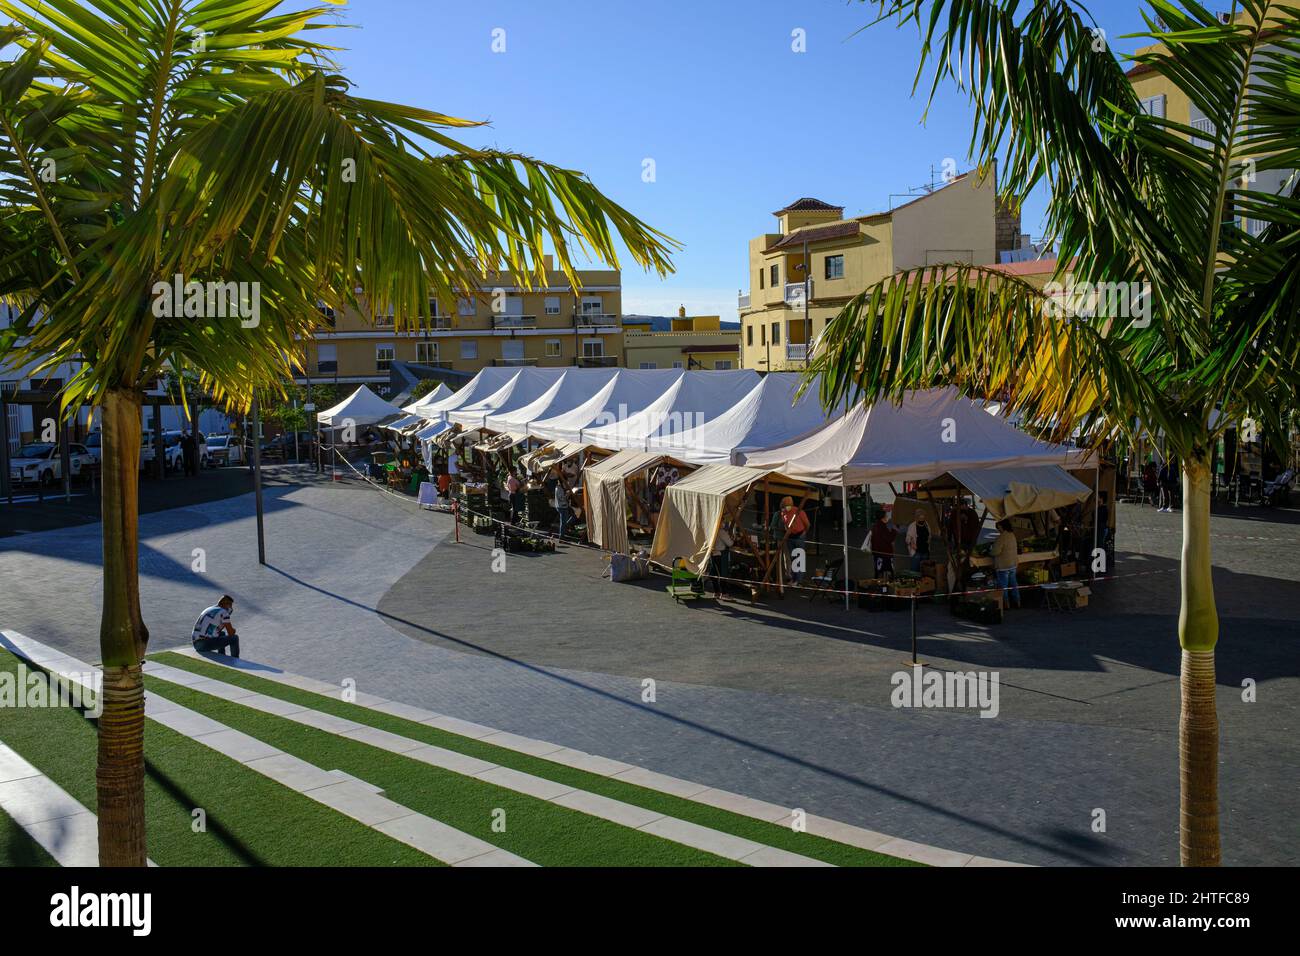 Bancarelle al coperto nella piazza di Playa San Juan, Tenerife, Isole Canarie, Spagna Foto Stock